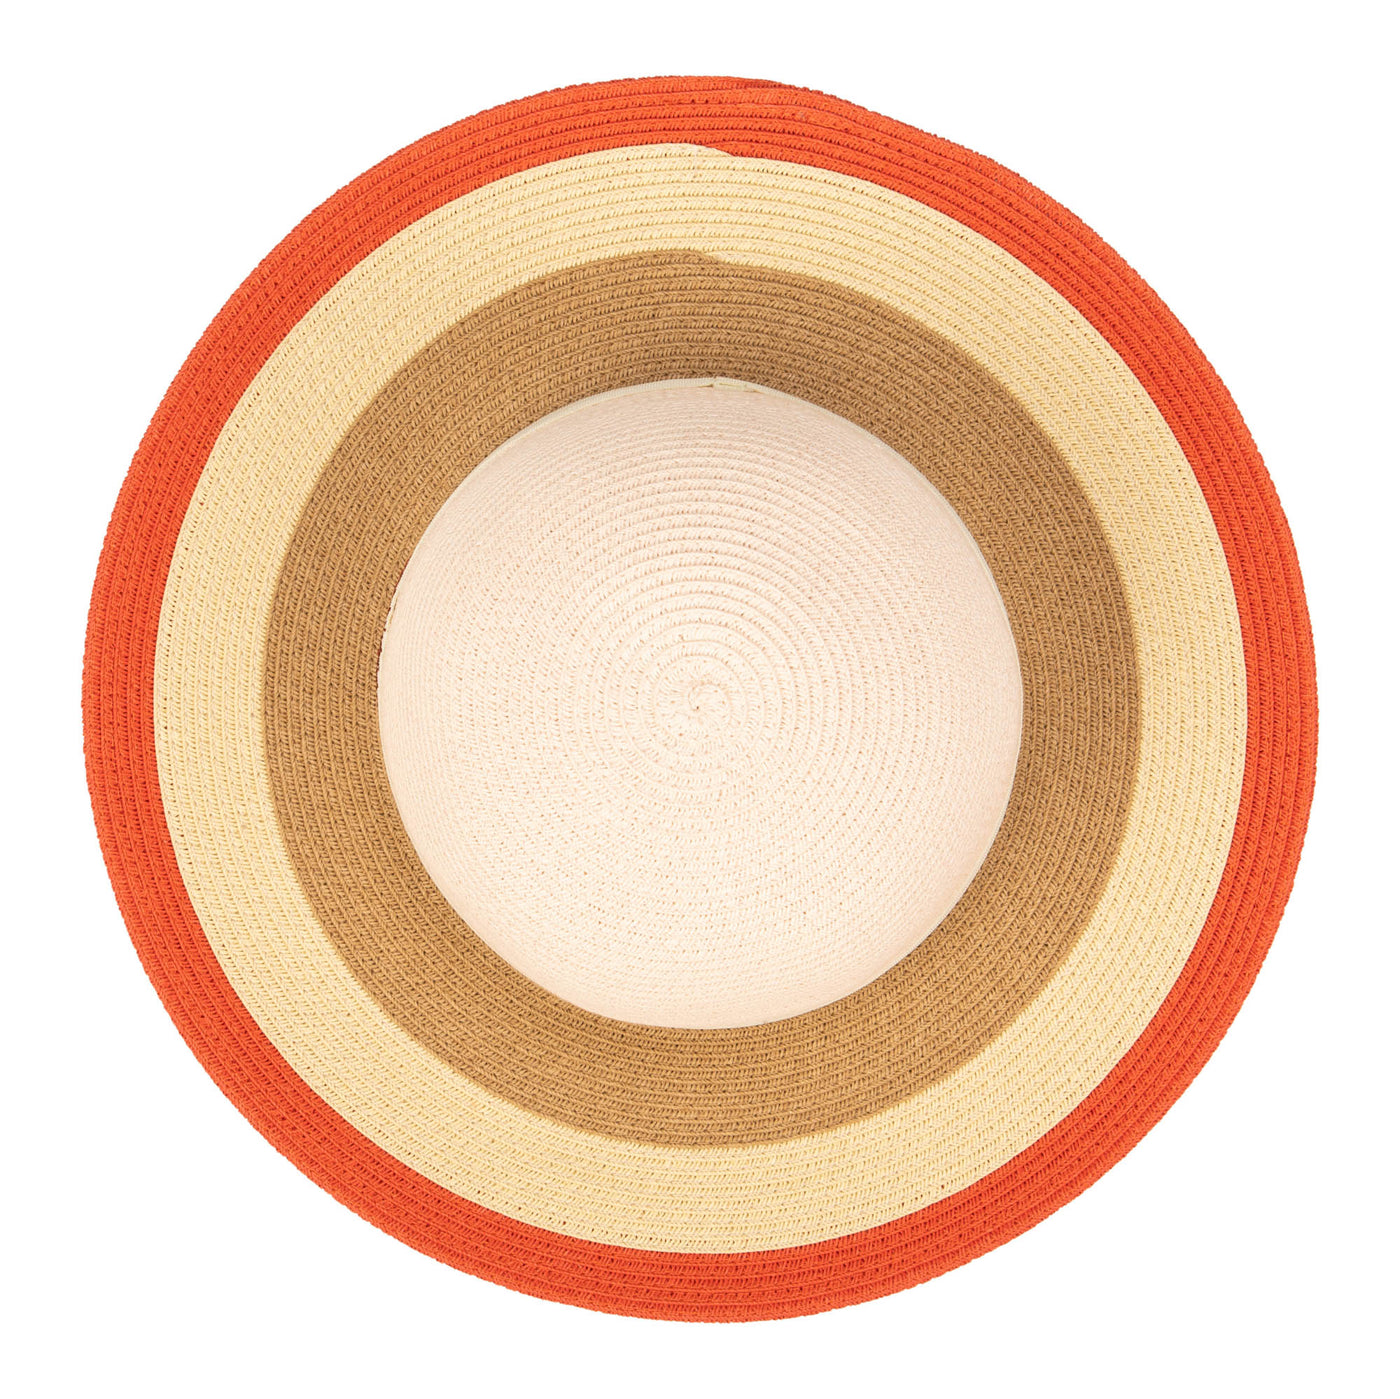 SUN BRIM - Kids Paperbraid Sun Hat With Retro Striped Brim